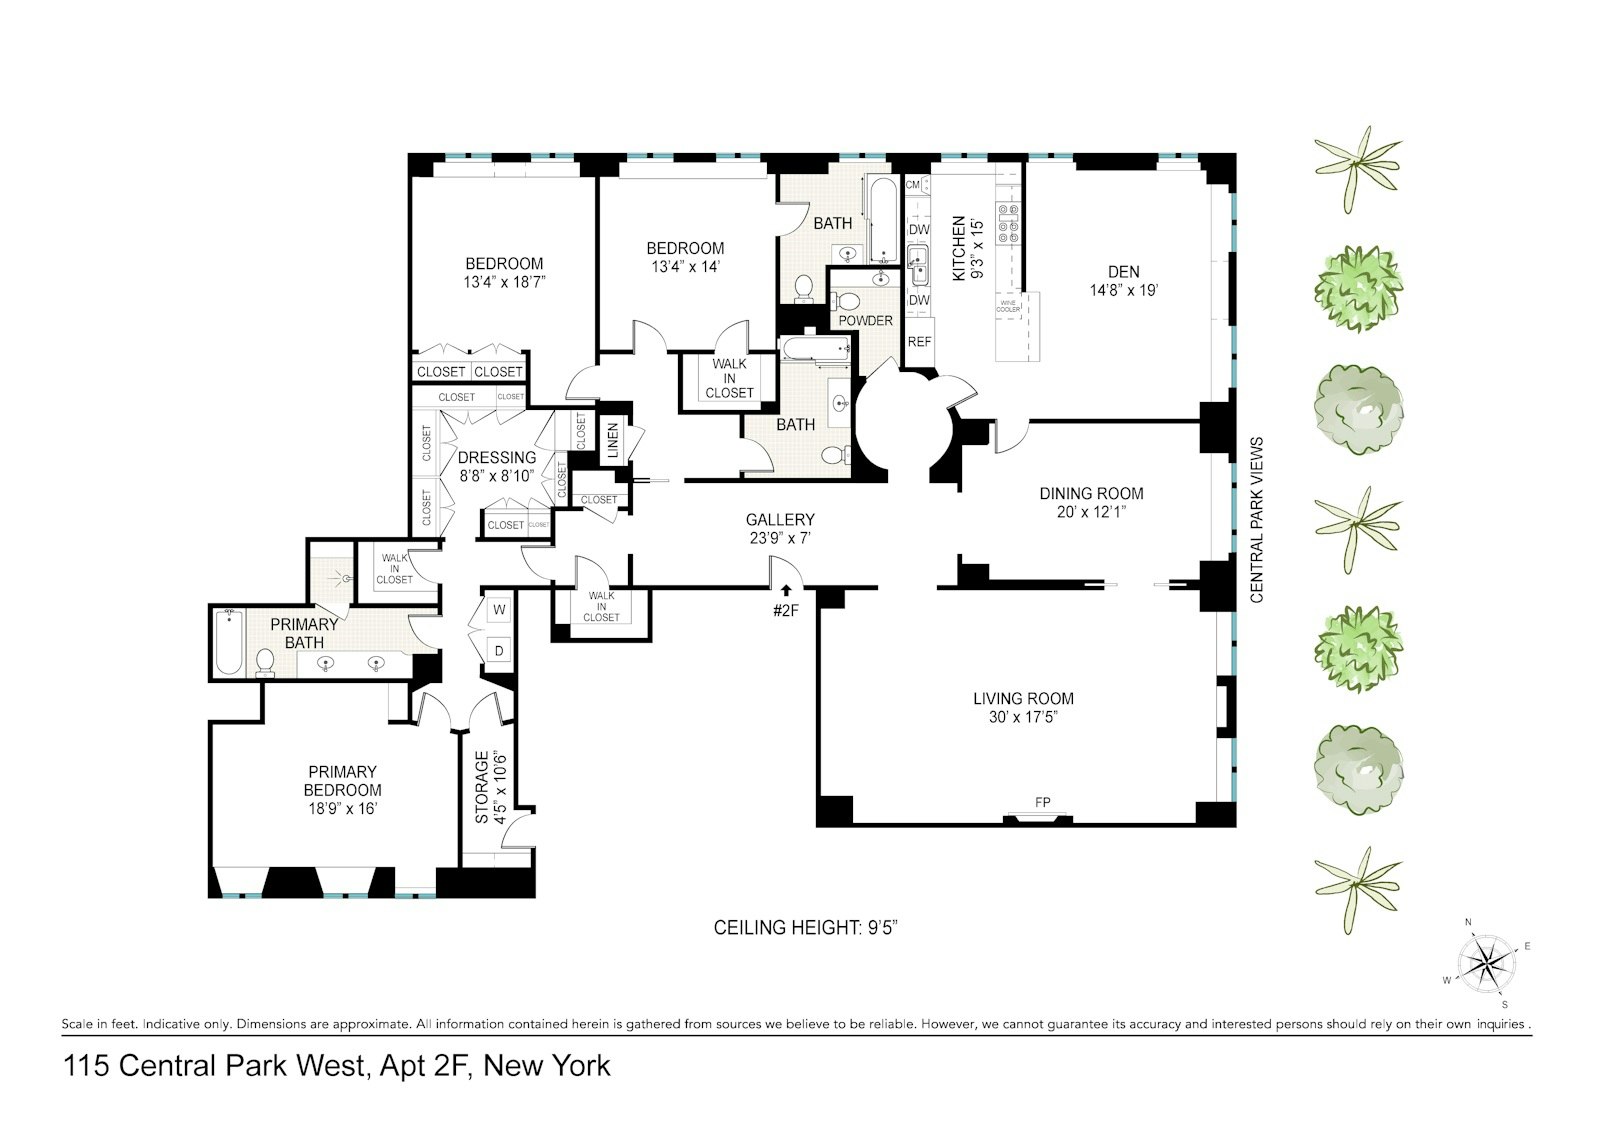 Floorplan for 115 Central Park West, 2/F